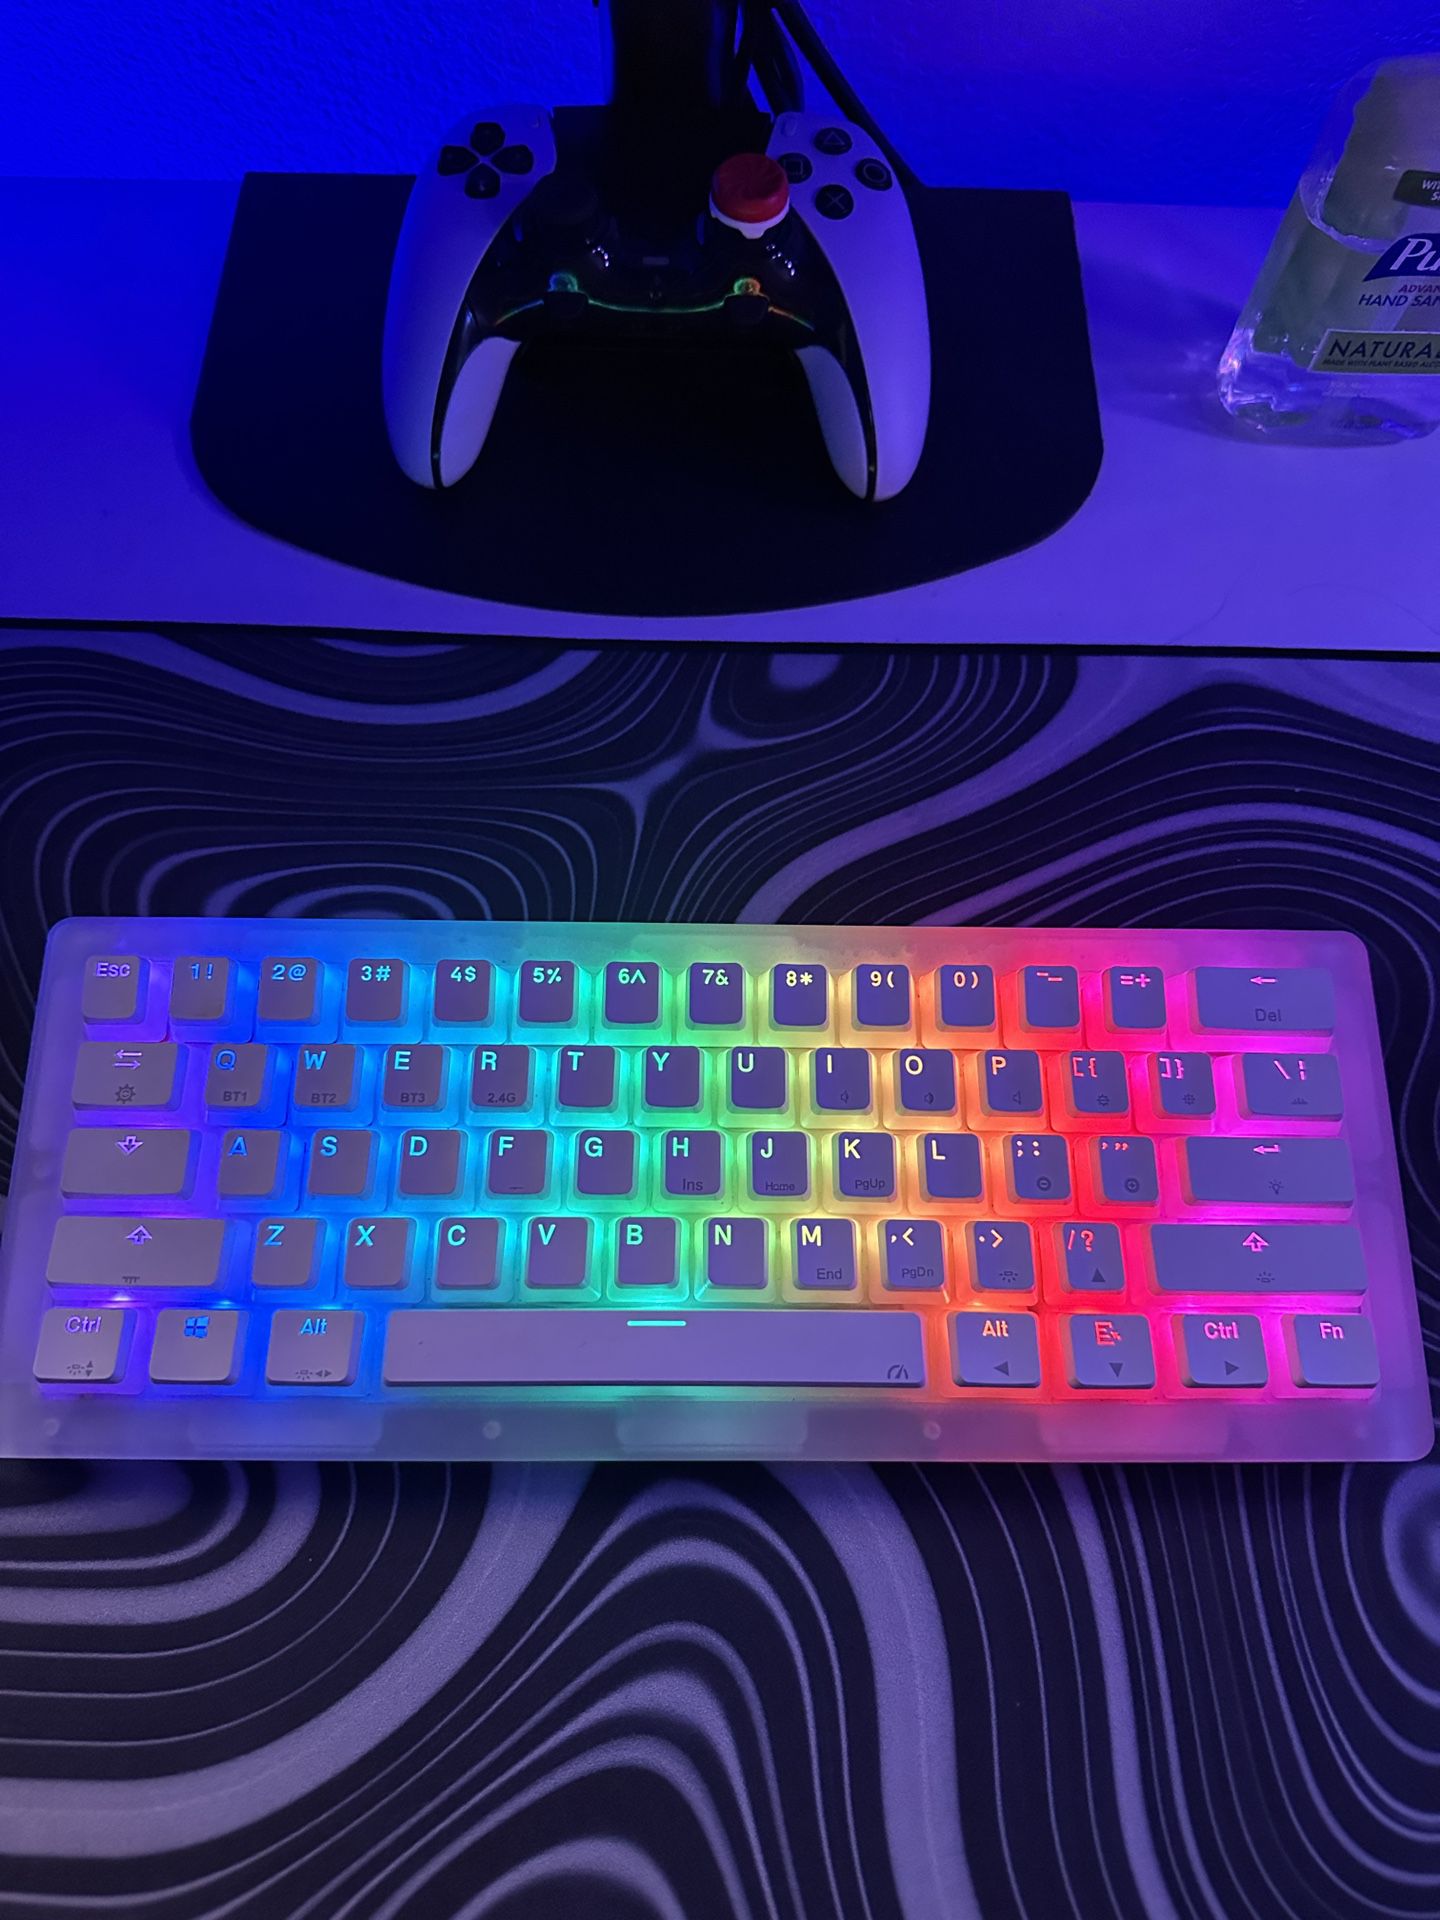 Gamma Kay K61 Pro Keyboard 